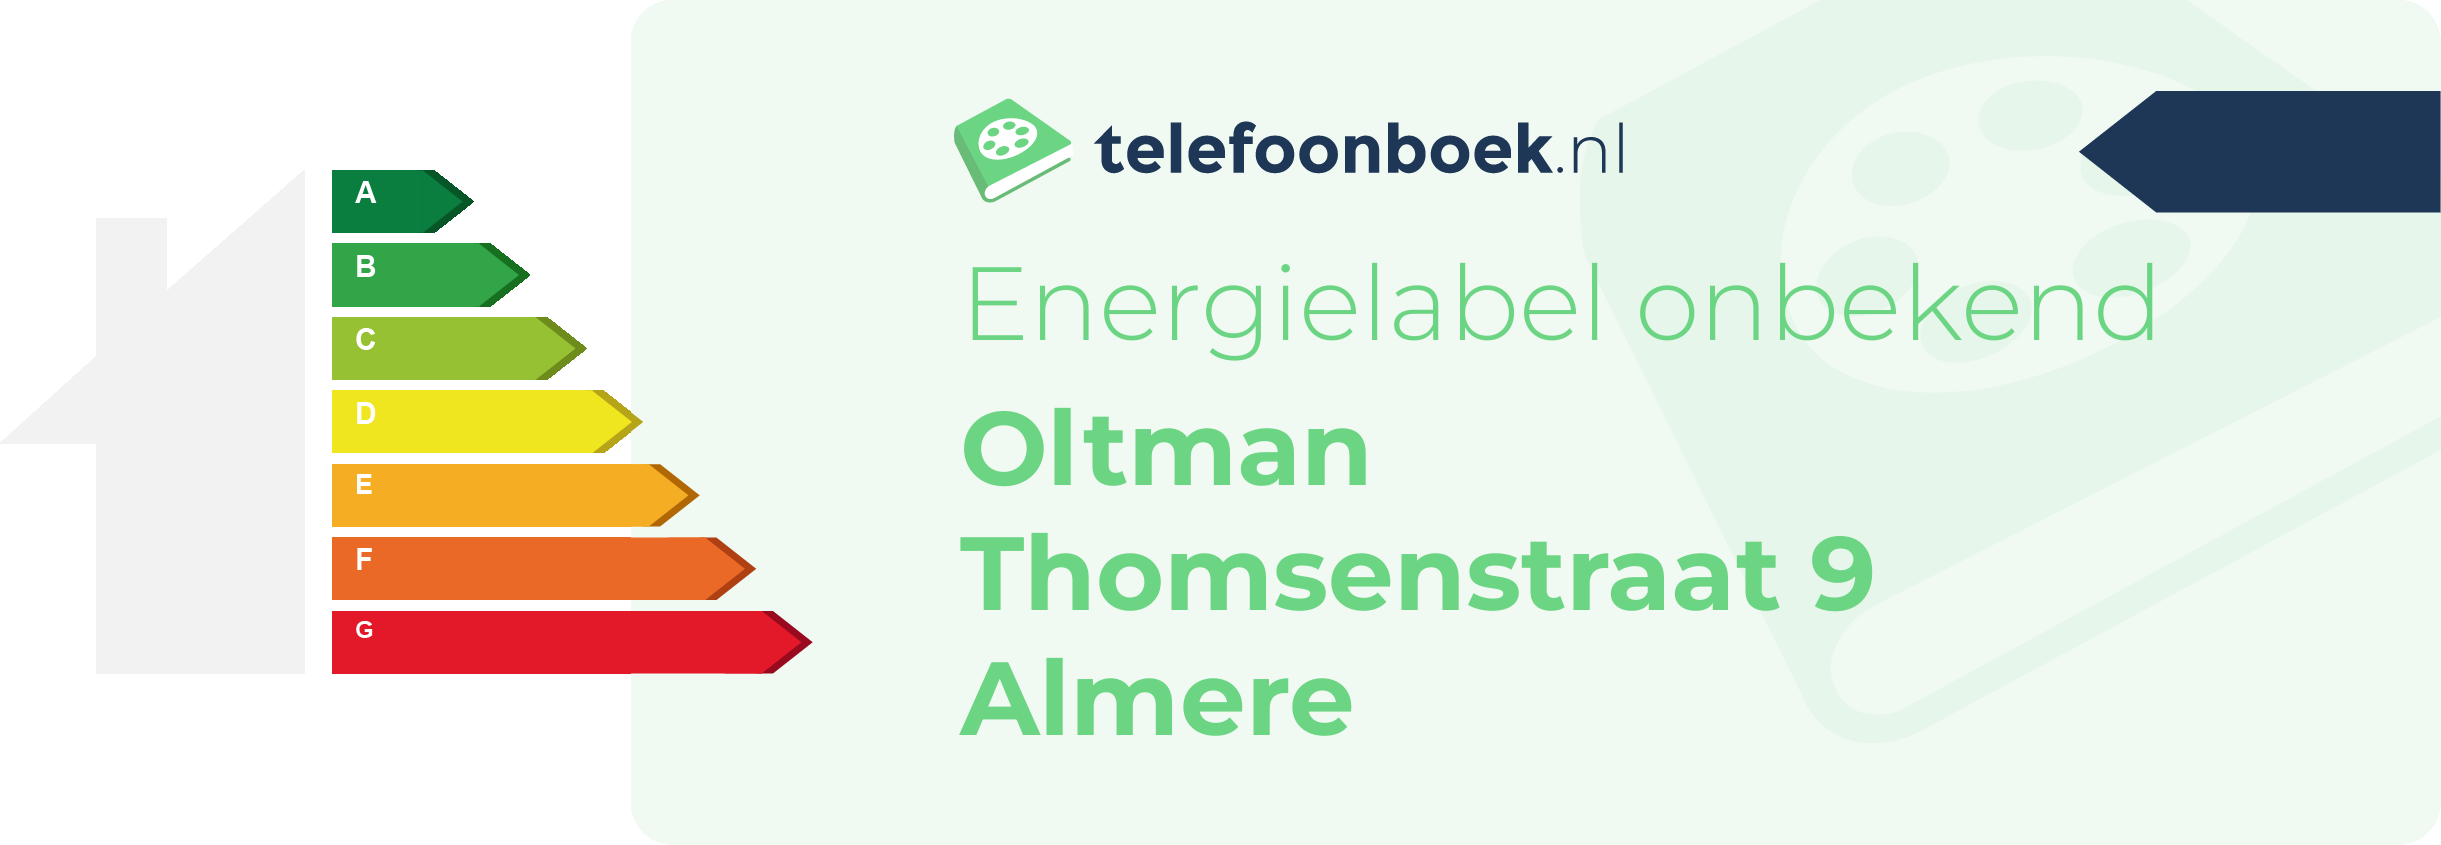 Energielabel Oltman Thomsenstraat 9 Almere